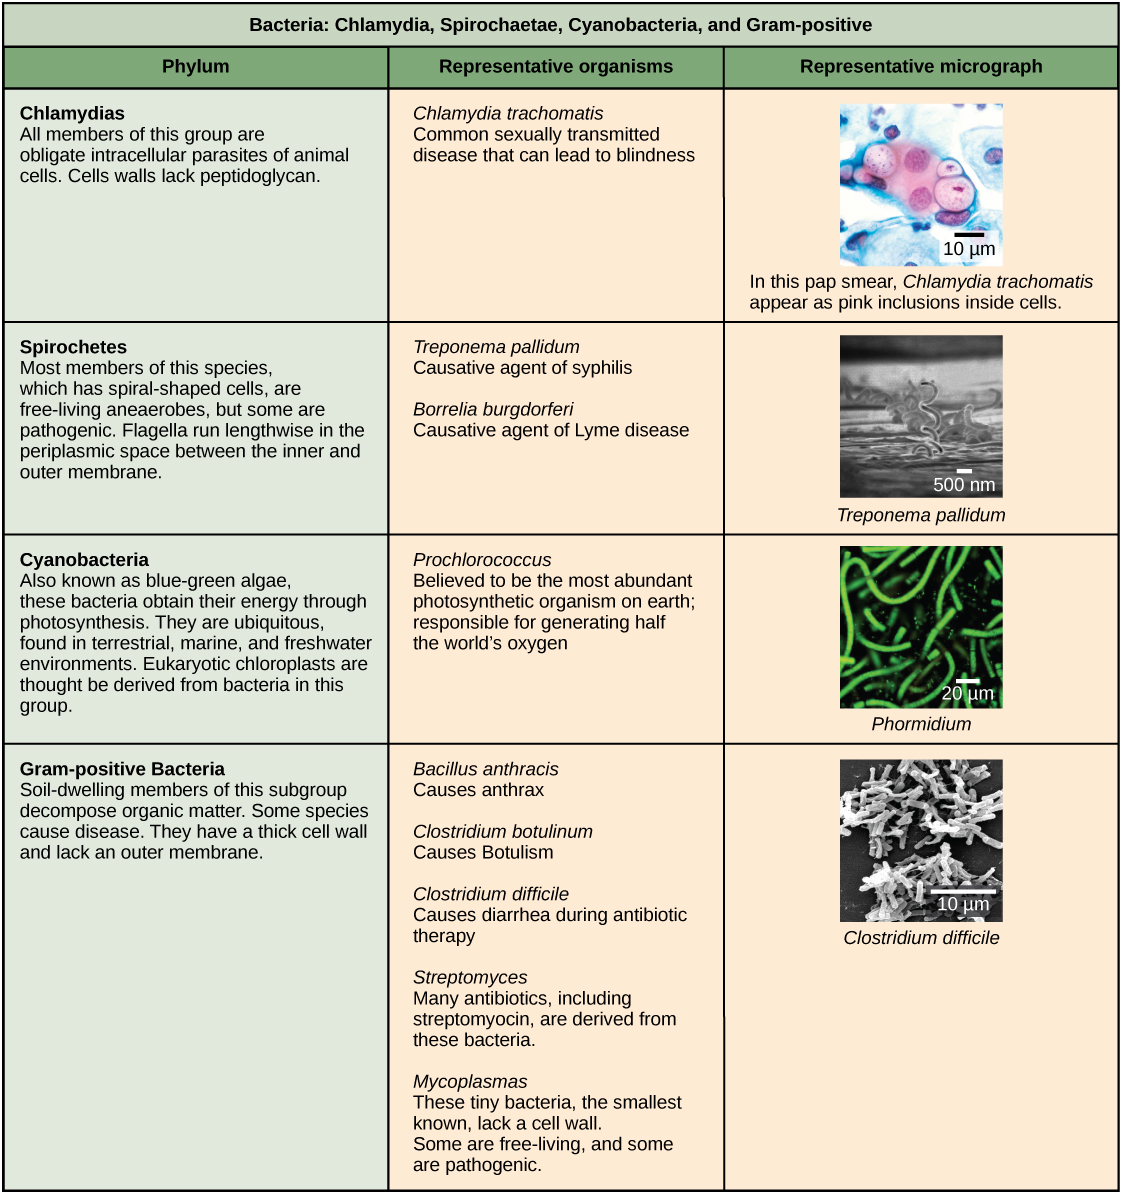 يصف هذا الجدول أربعة أنواع من البكتيريا، وهي الكلاميديا والسبيروشايت والبكتيريا الزرقاء والبكتيريا الموجبة للجرام. تم تنظيم الجدول حسب الفيلوم والكائنات الممثلة لها وصورة مجهرية تمثيلية